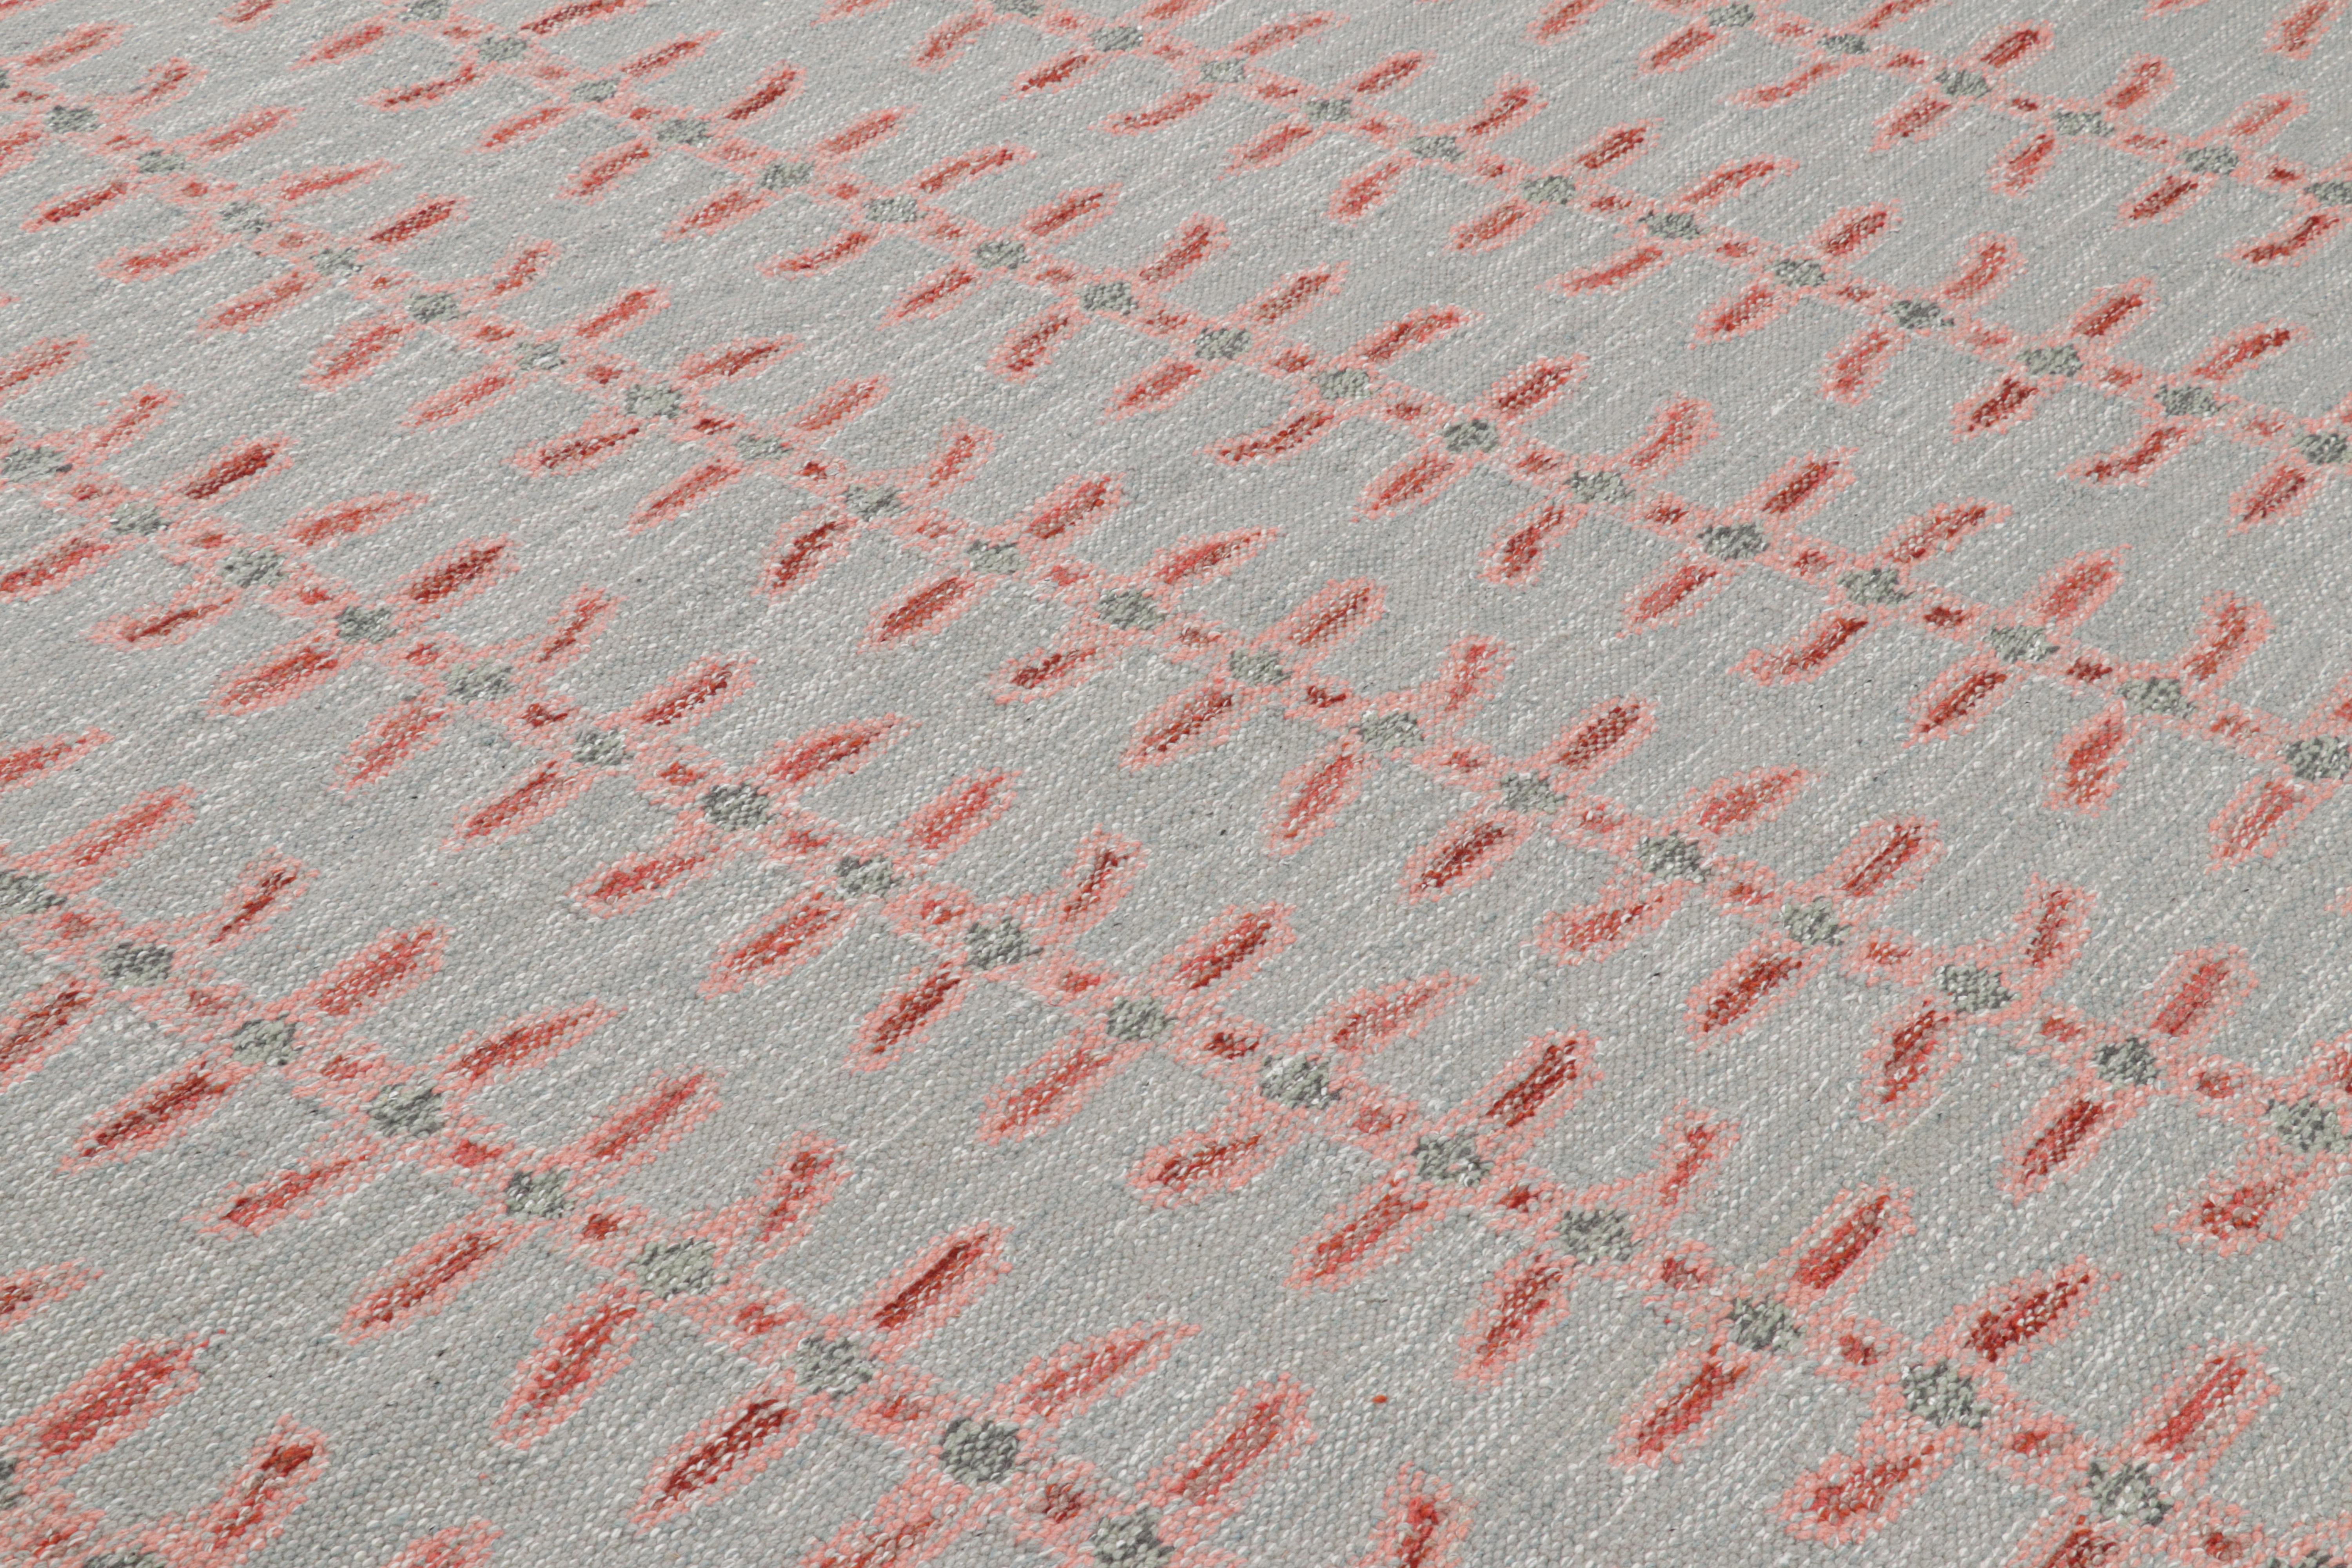 Ce tapis de 8x10 est un nouvel ajout audacieux à la Collection S &New de Rug & Kilim. Tissé à la main dans un tissage plat en laine avec également des fils naturels non teints, son design s'inspire d'une fusion de minimalisme suédois et de clins